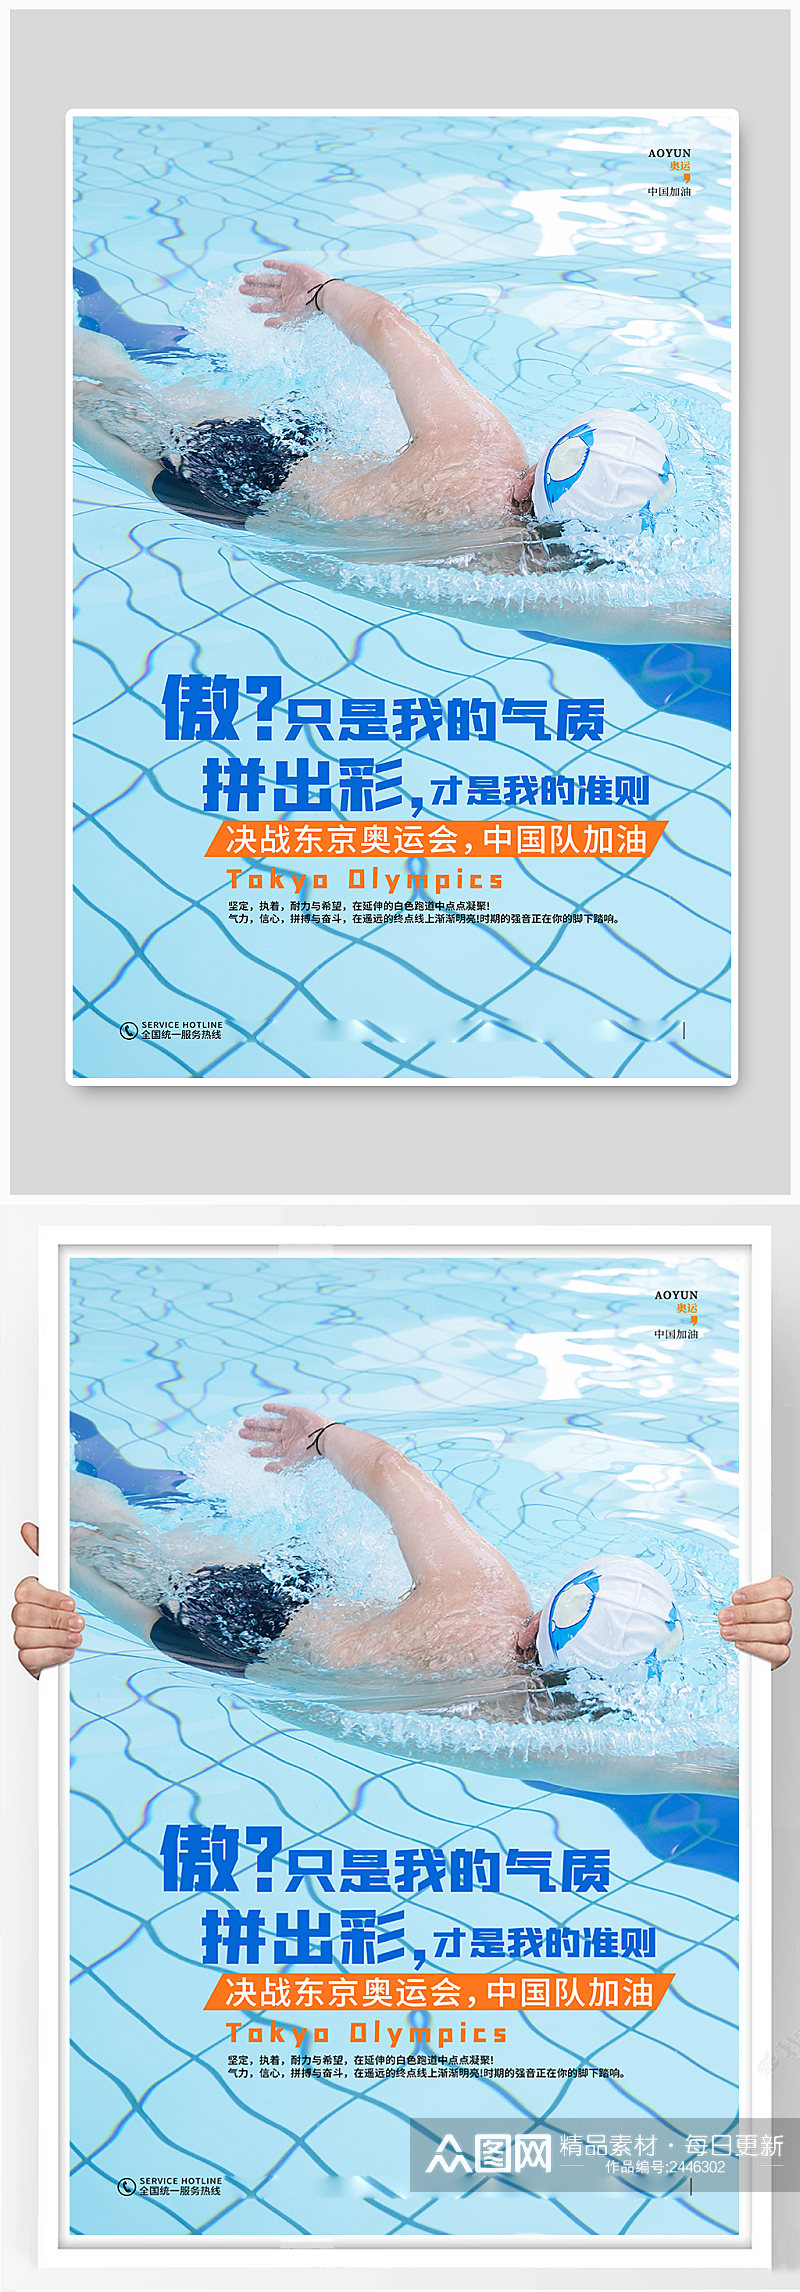 蓝色炫酷东京奥运会中国加油海报素材